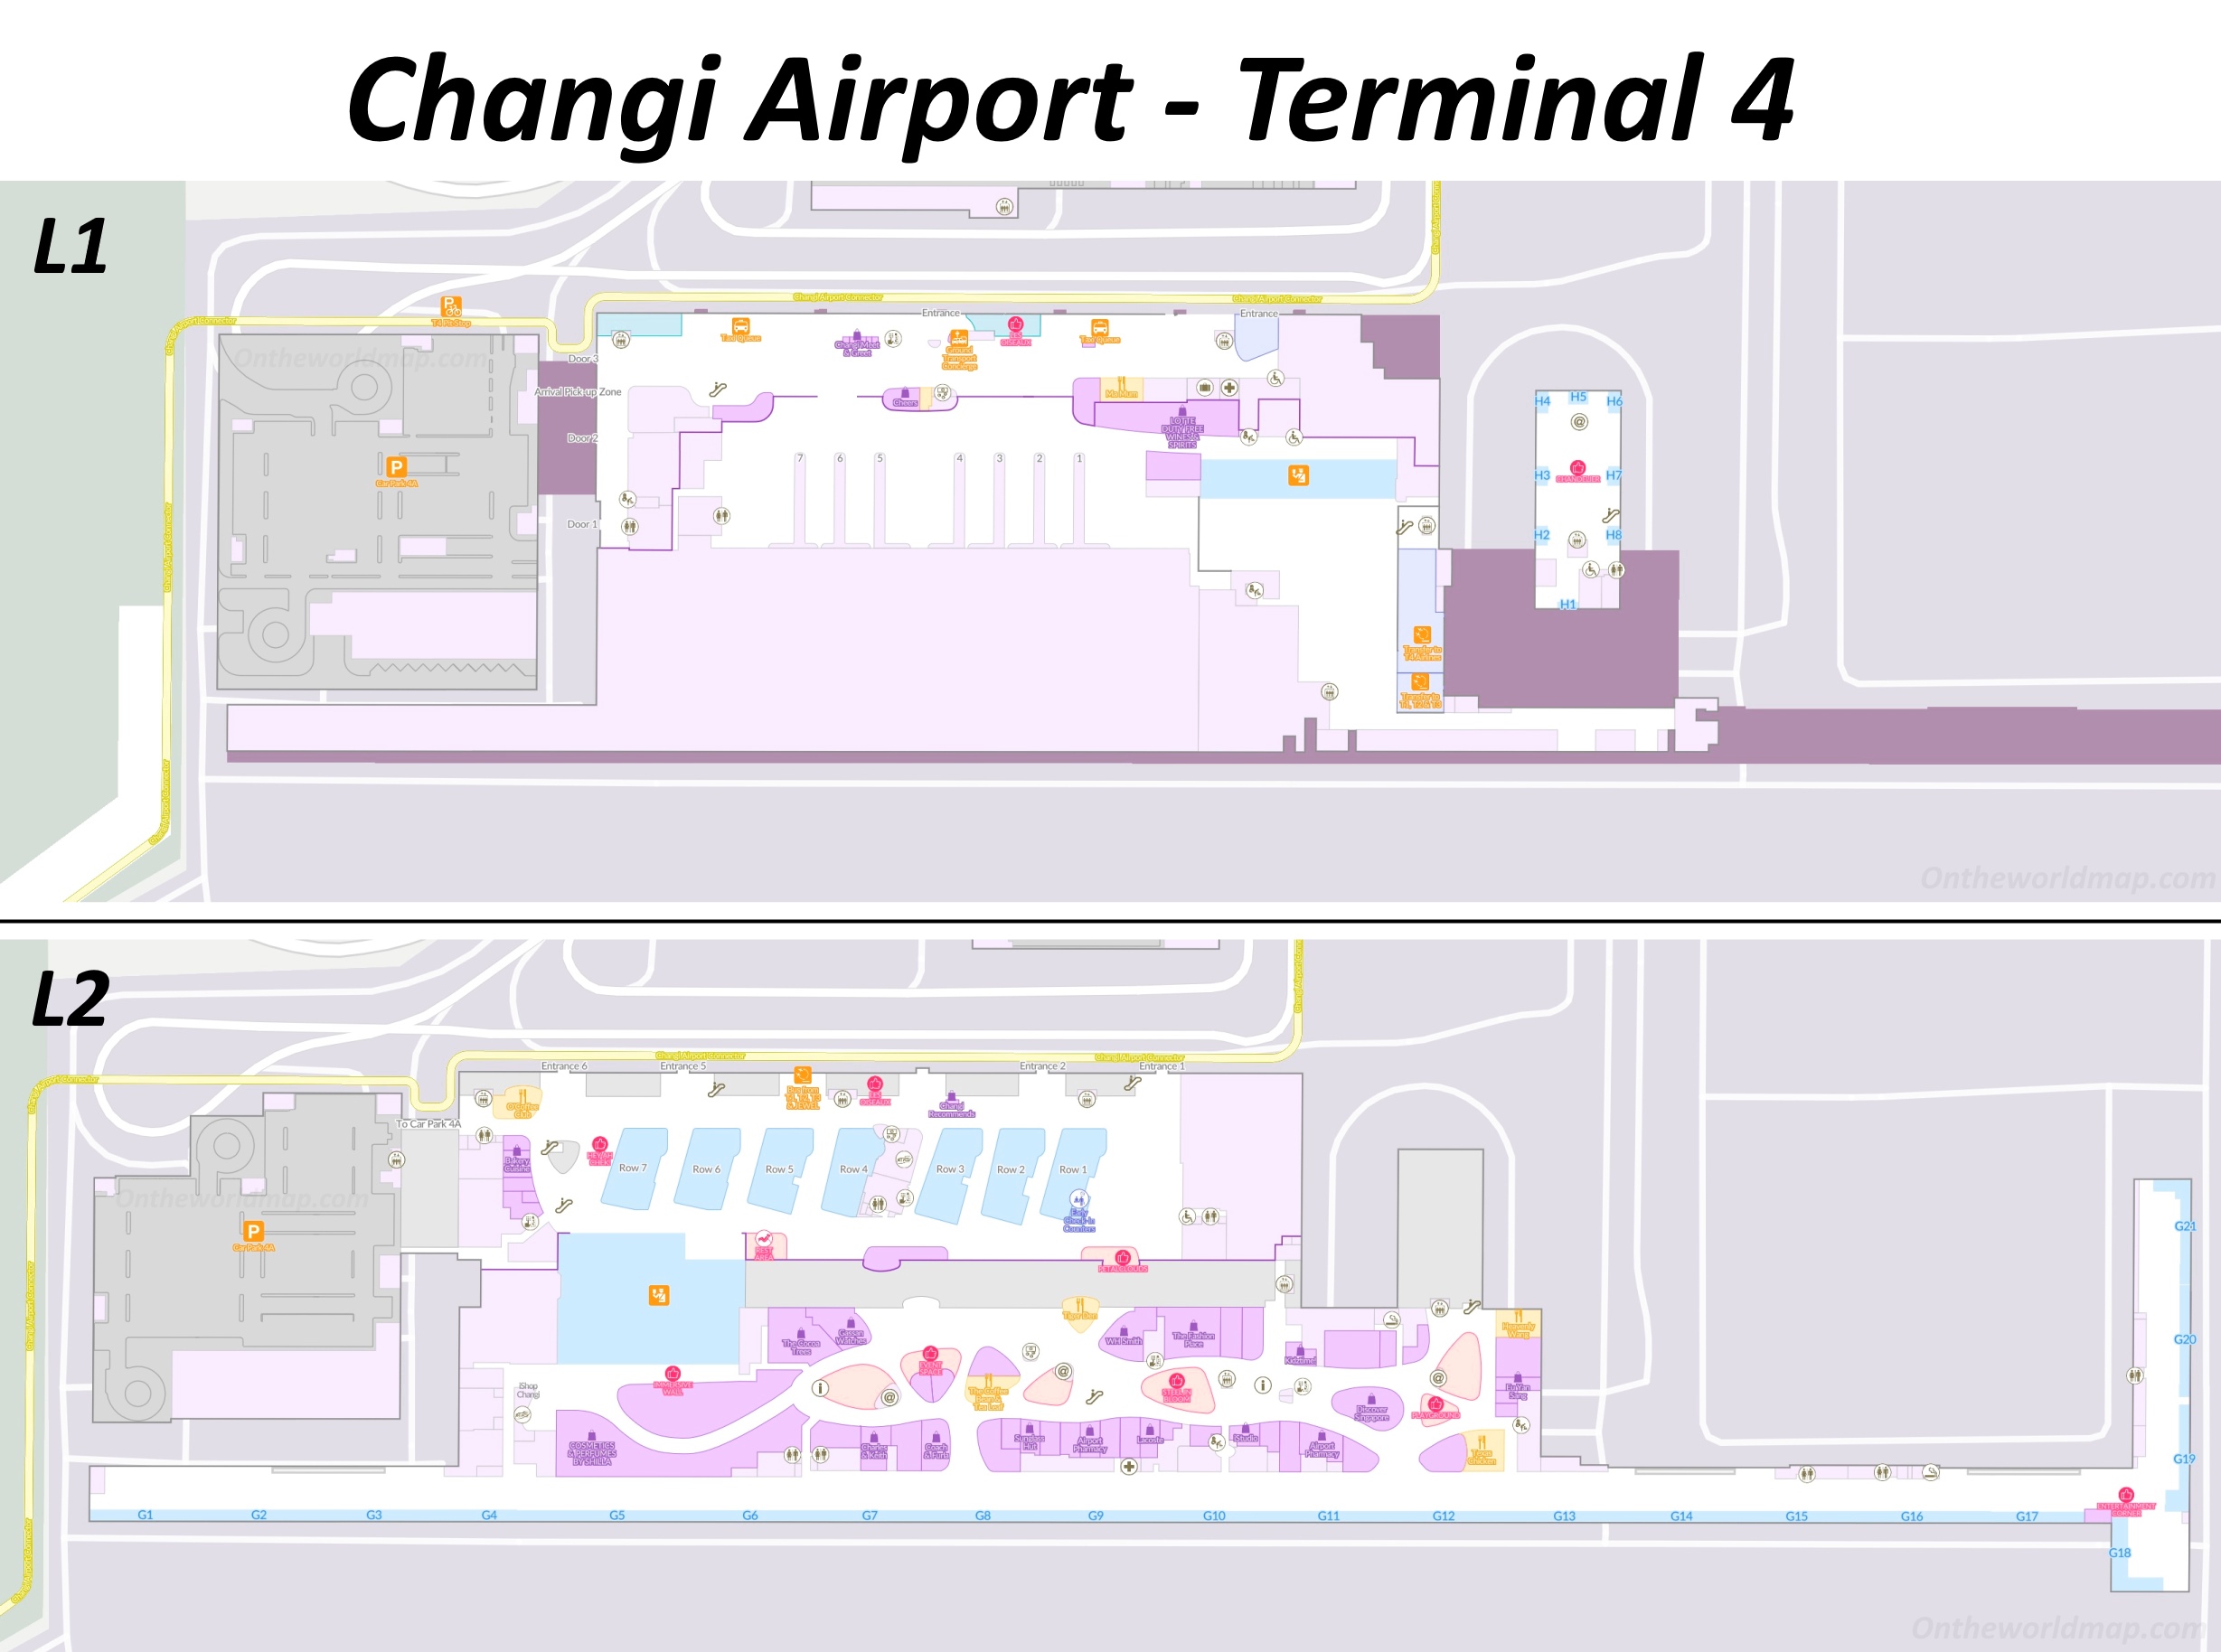 Changi Airport Terminal 4 Map | Singapore - Ontheworldmap.com